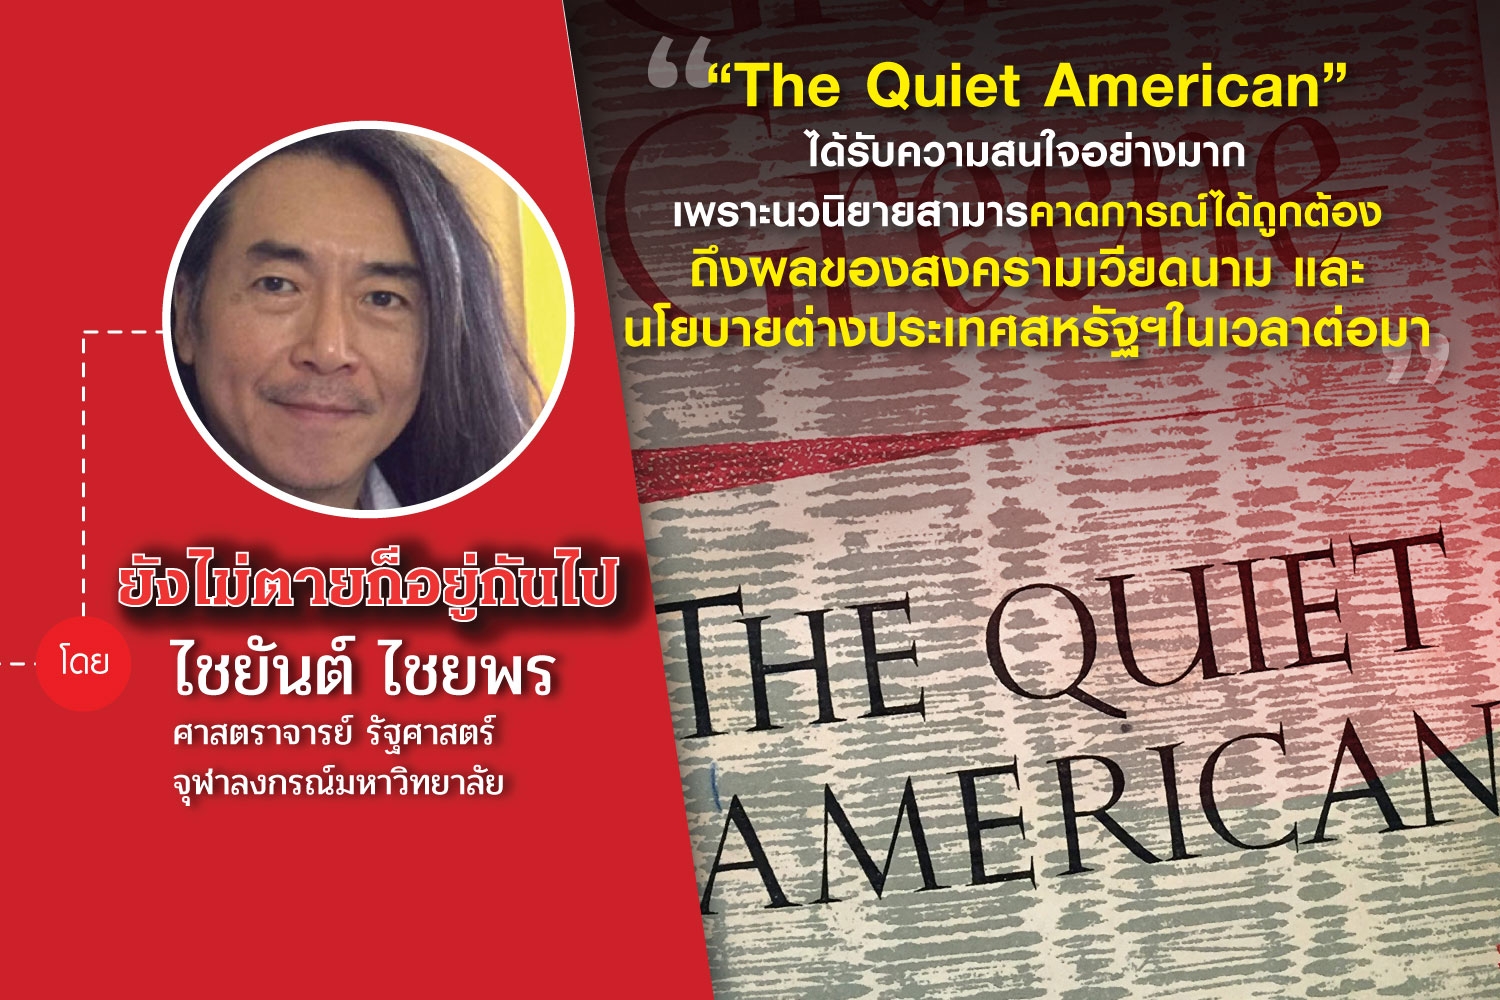 45 ปี 6 ตุลาฯ (ตอนที่แปด): The Quiet American กับ รัฐประหารในลาว พ.ศ.2502  